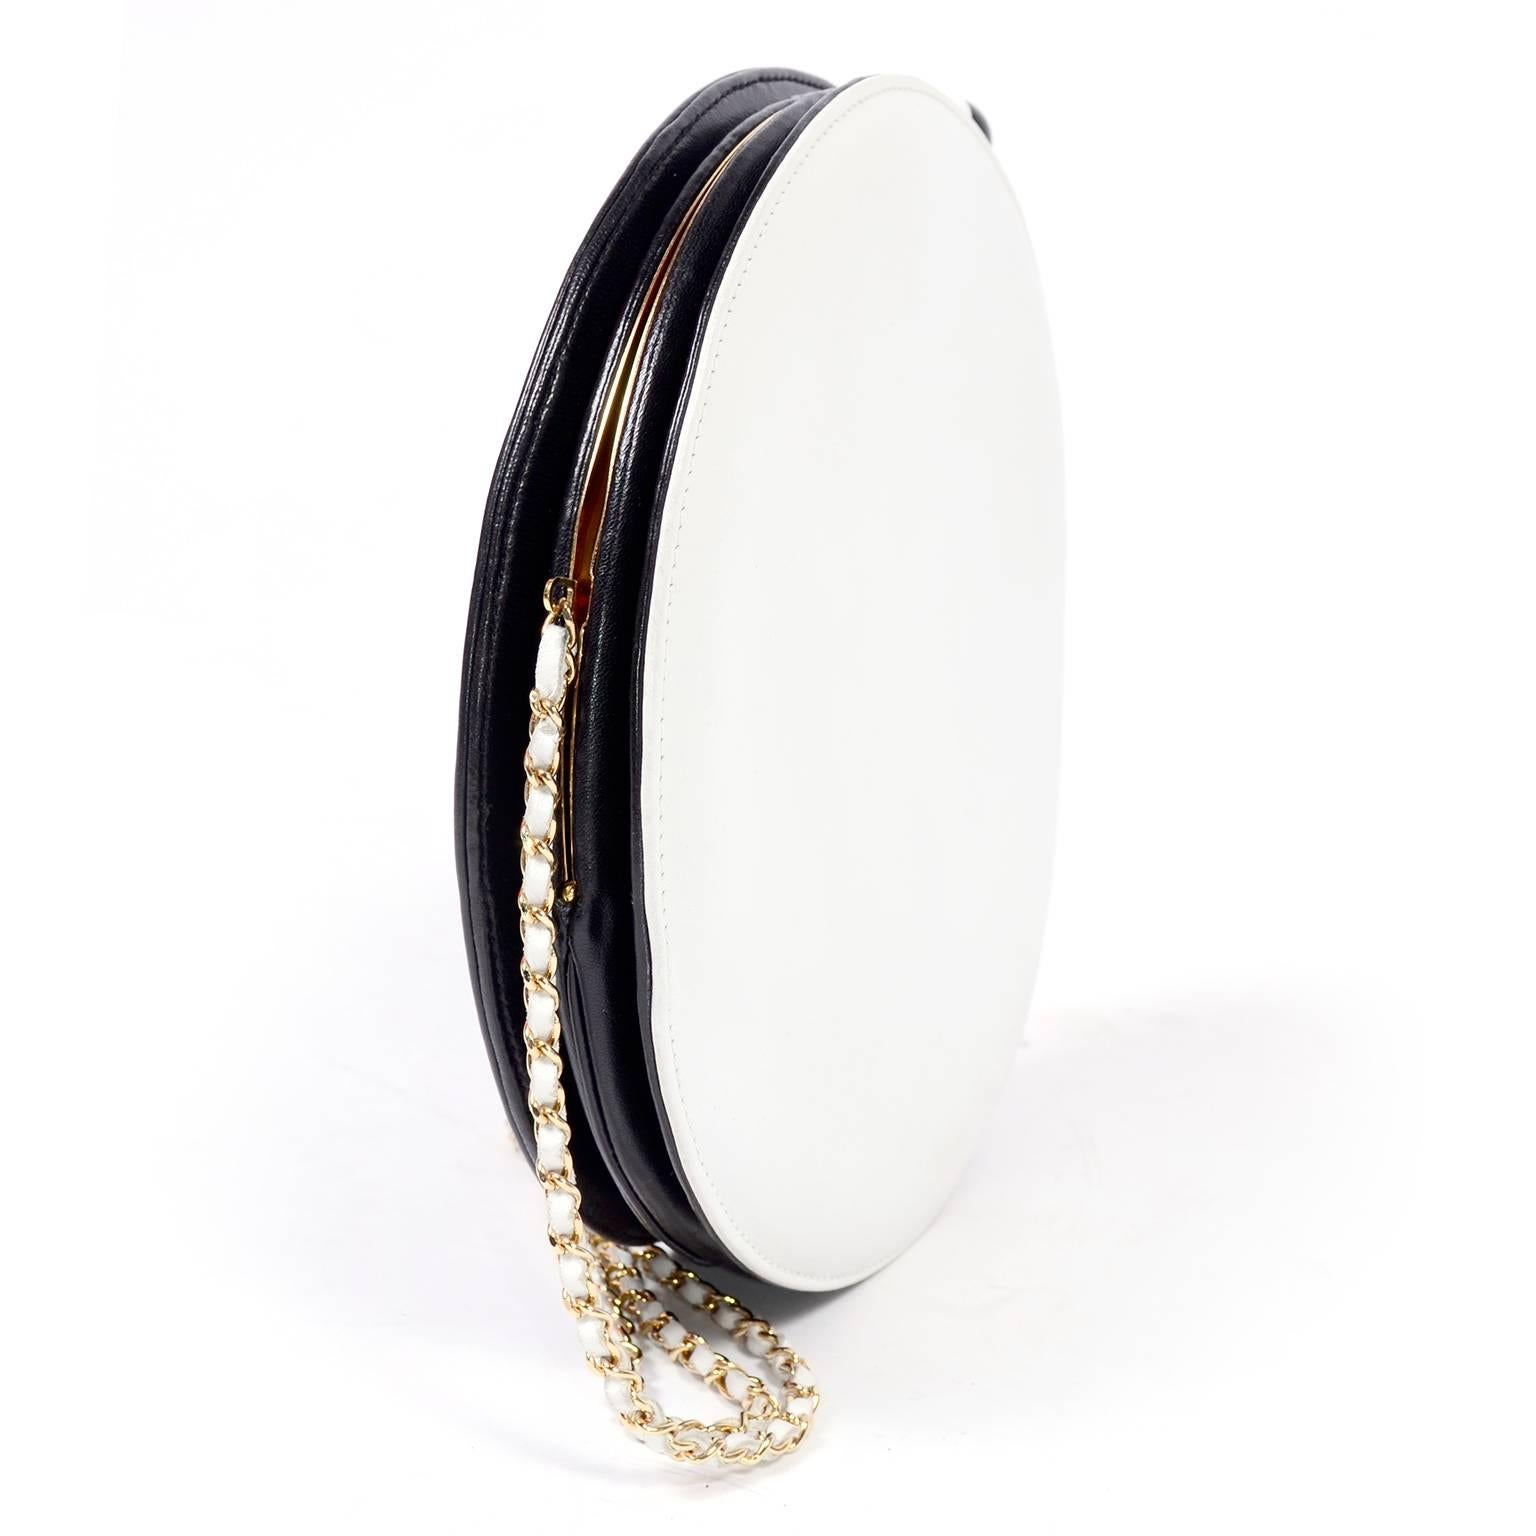 Seltene Chanel runde schwarz-weiße Lammfell-Handtasche Circle Umhängetasche oder Clutch 1